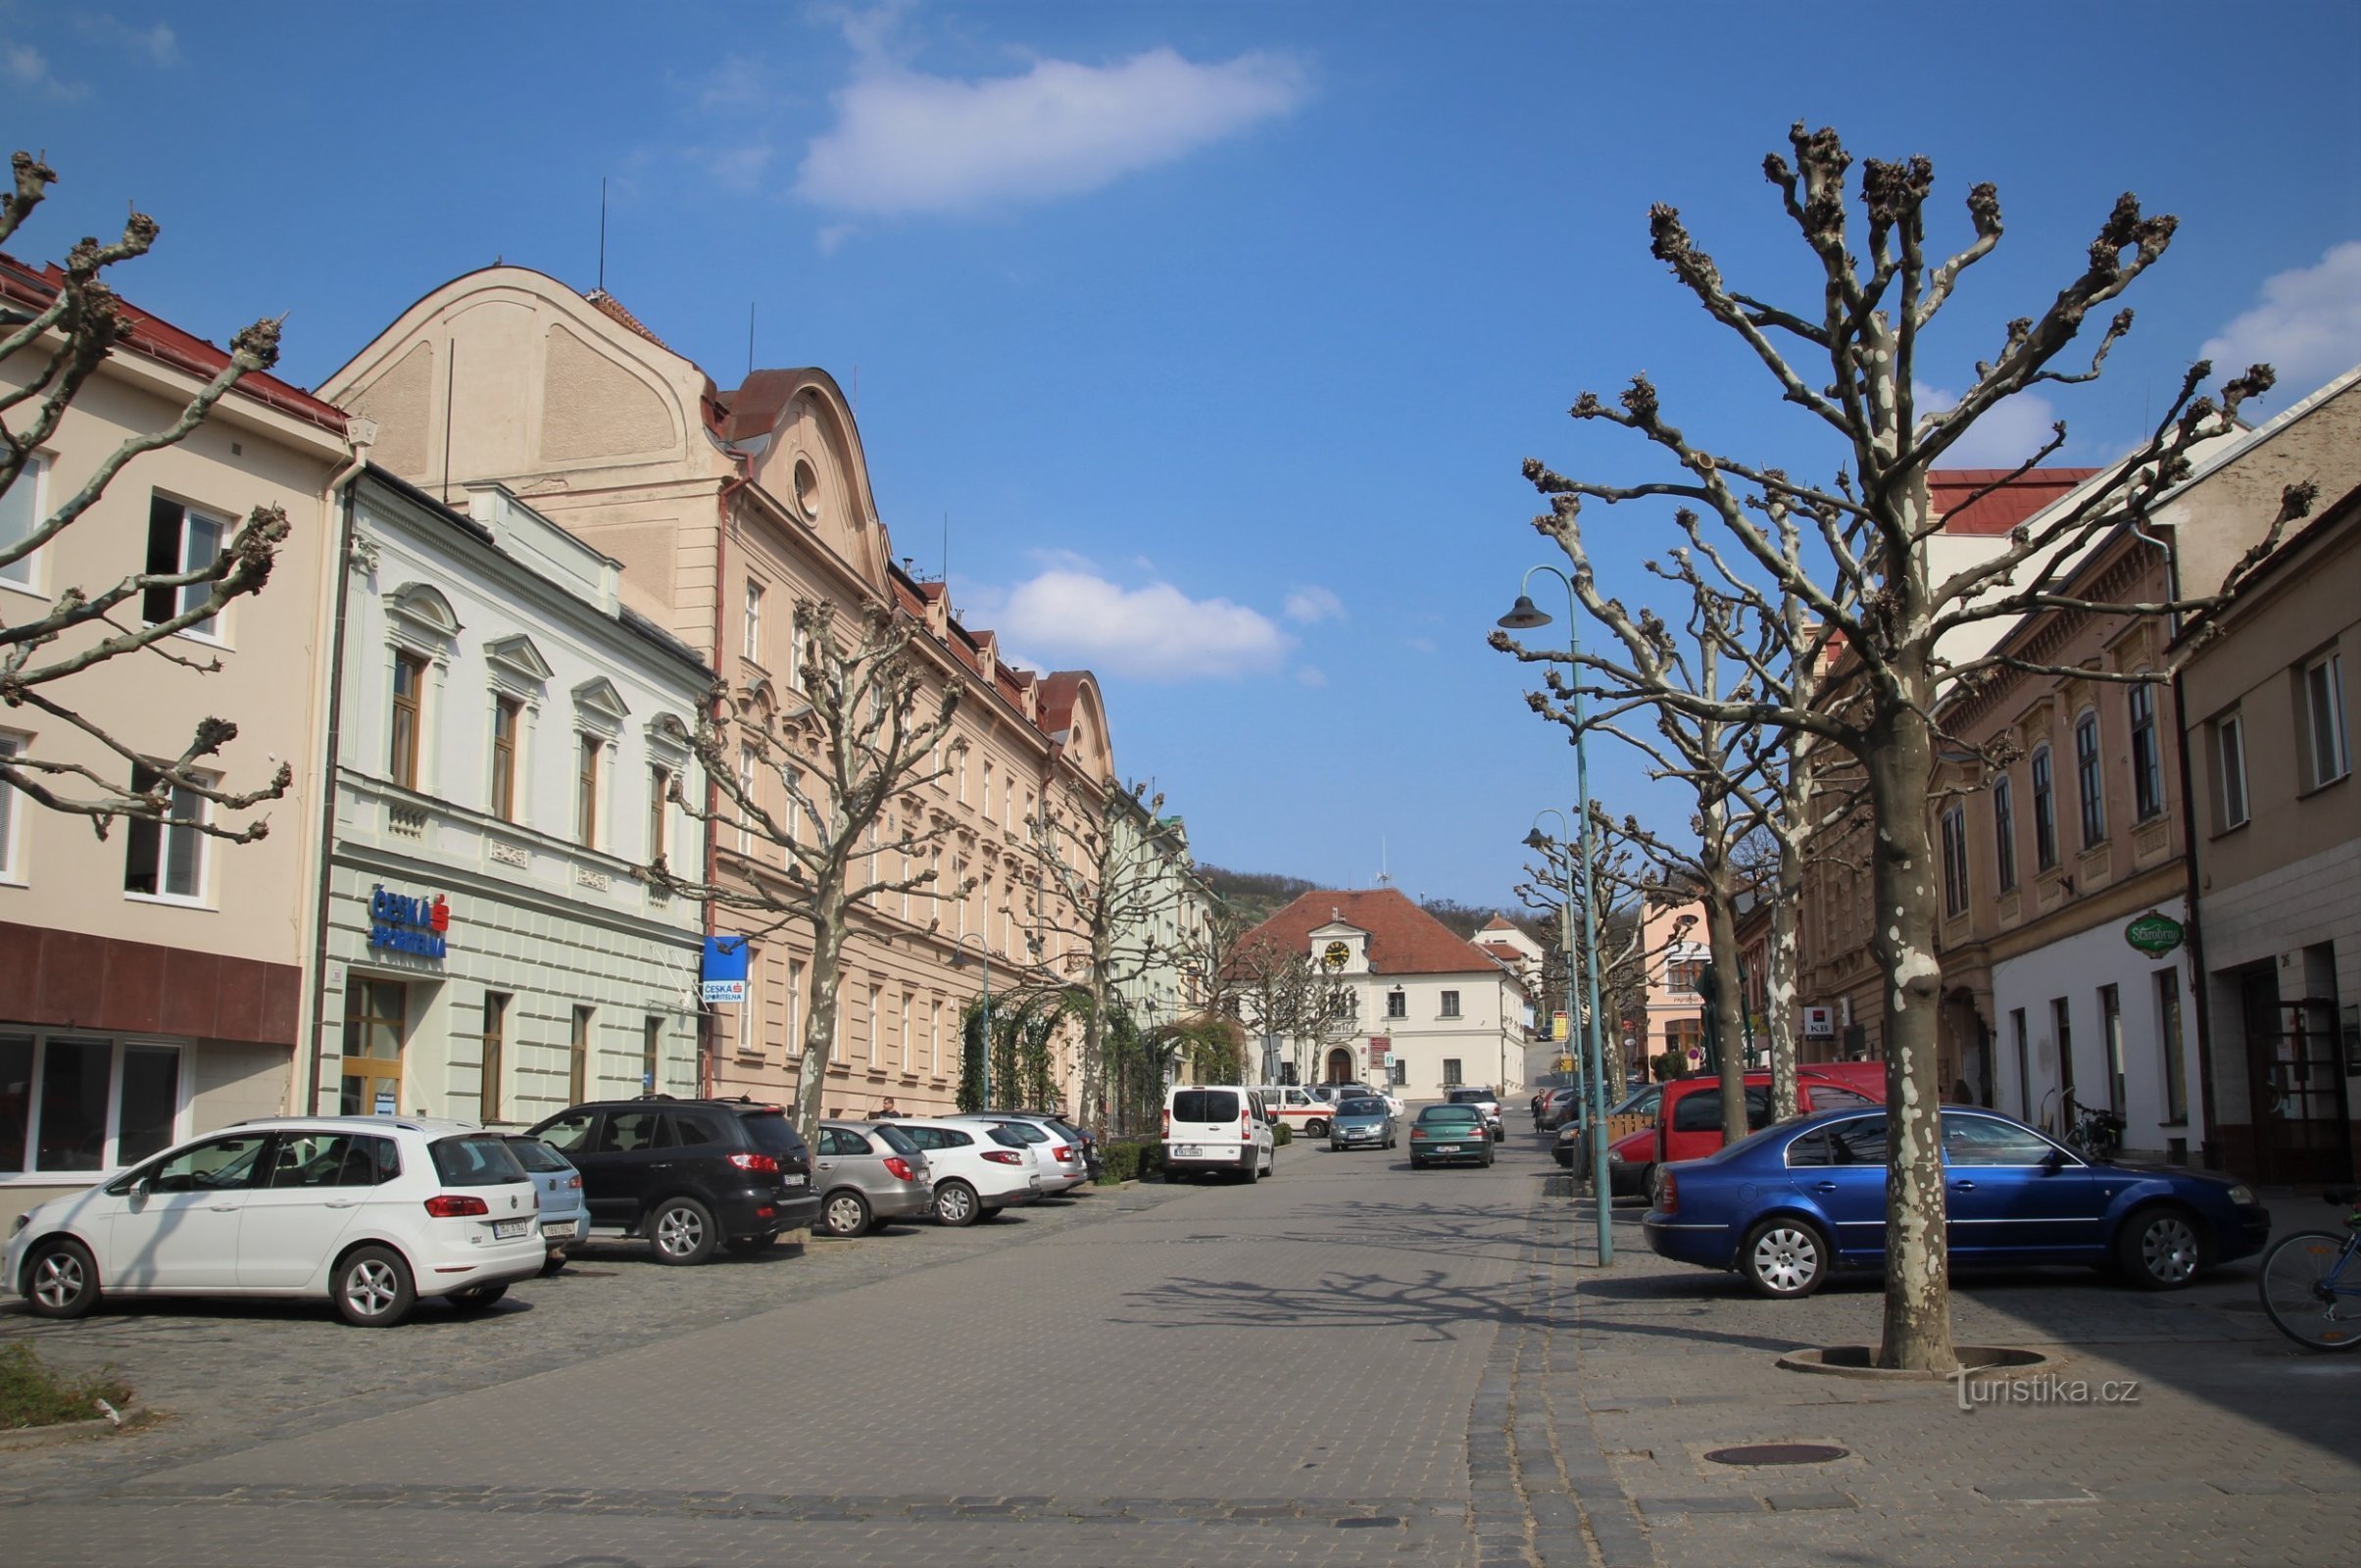 Centrem Židlochovic je náměstí Svobody